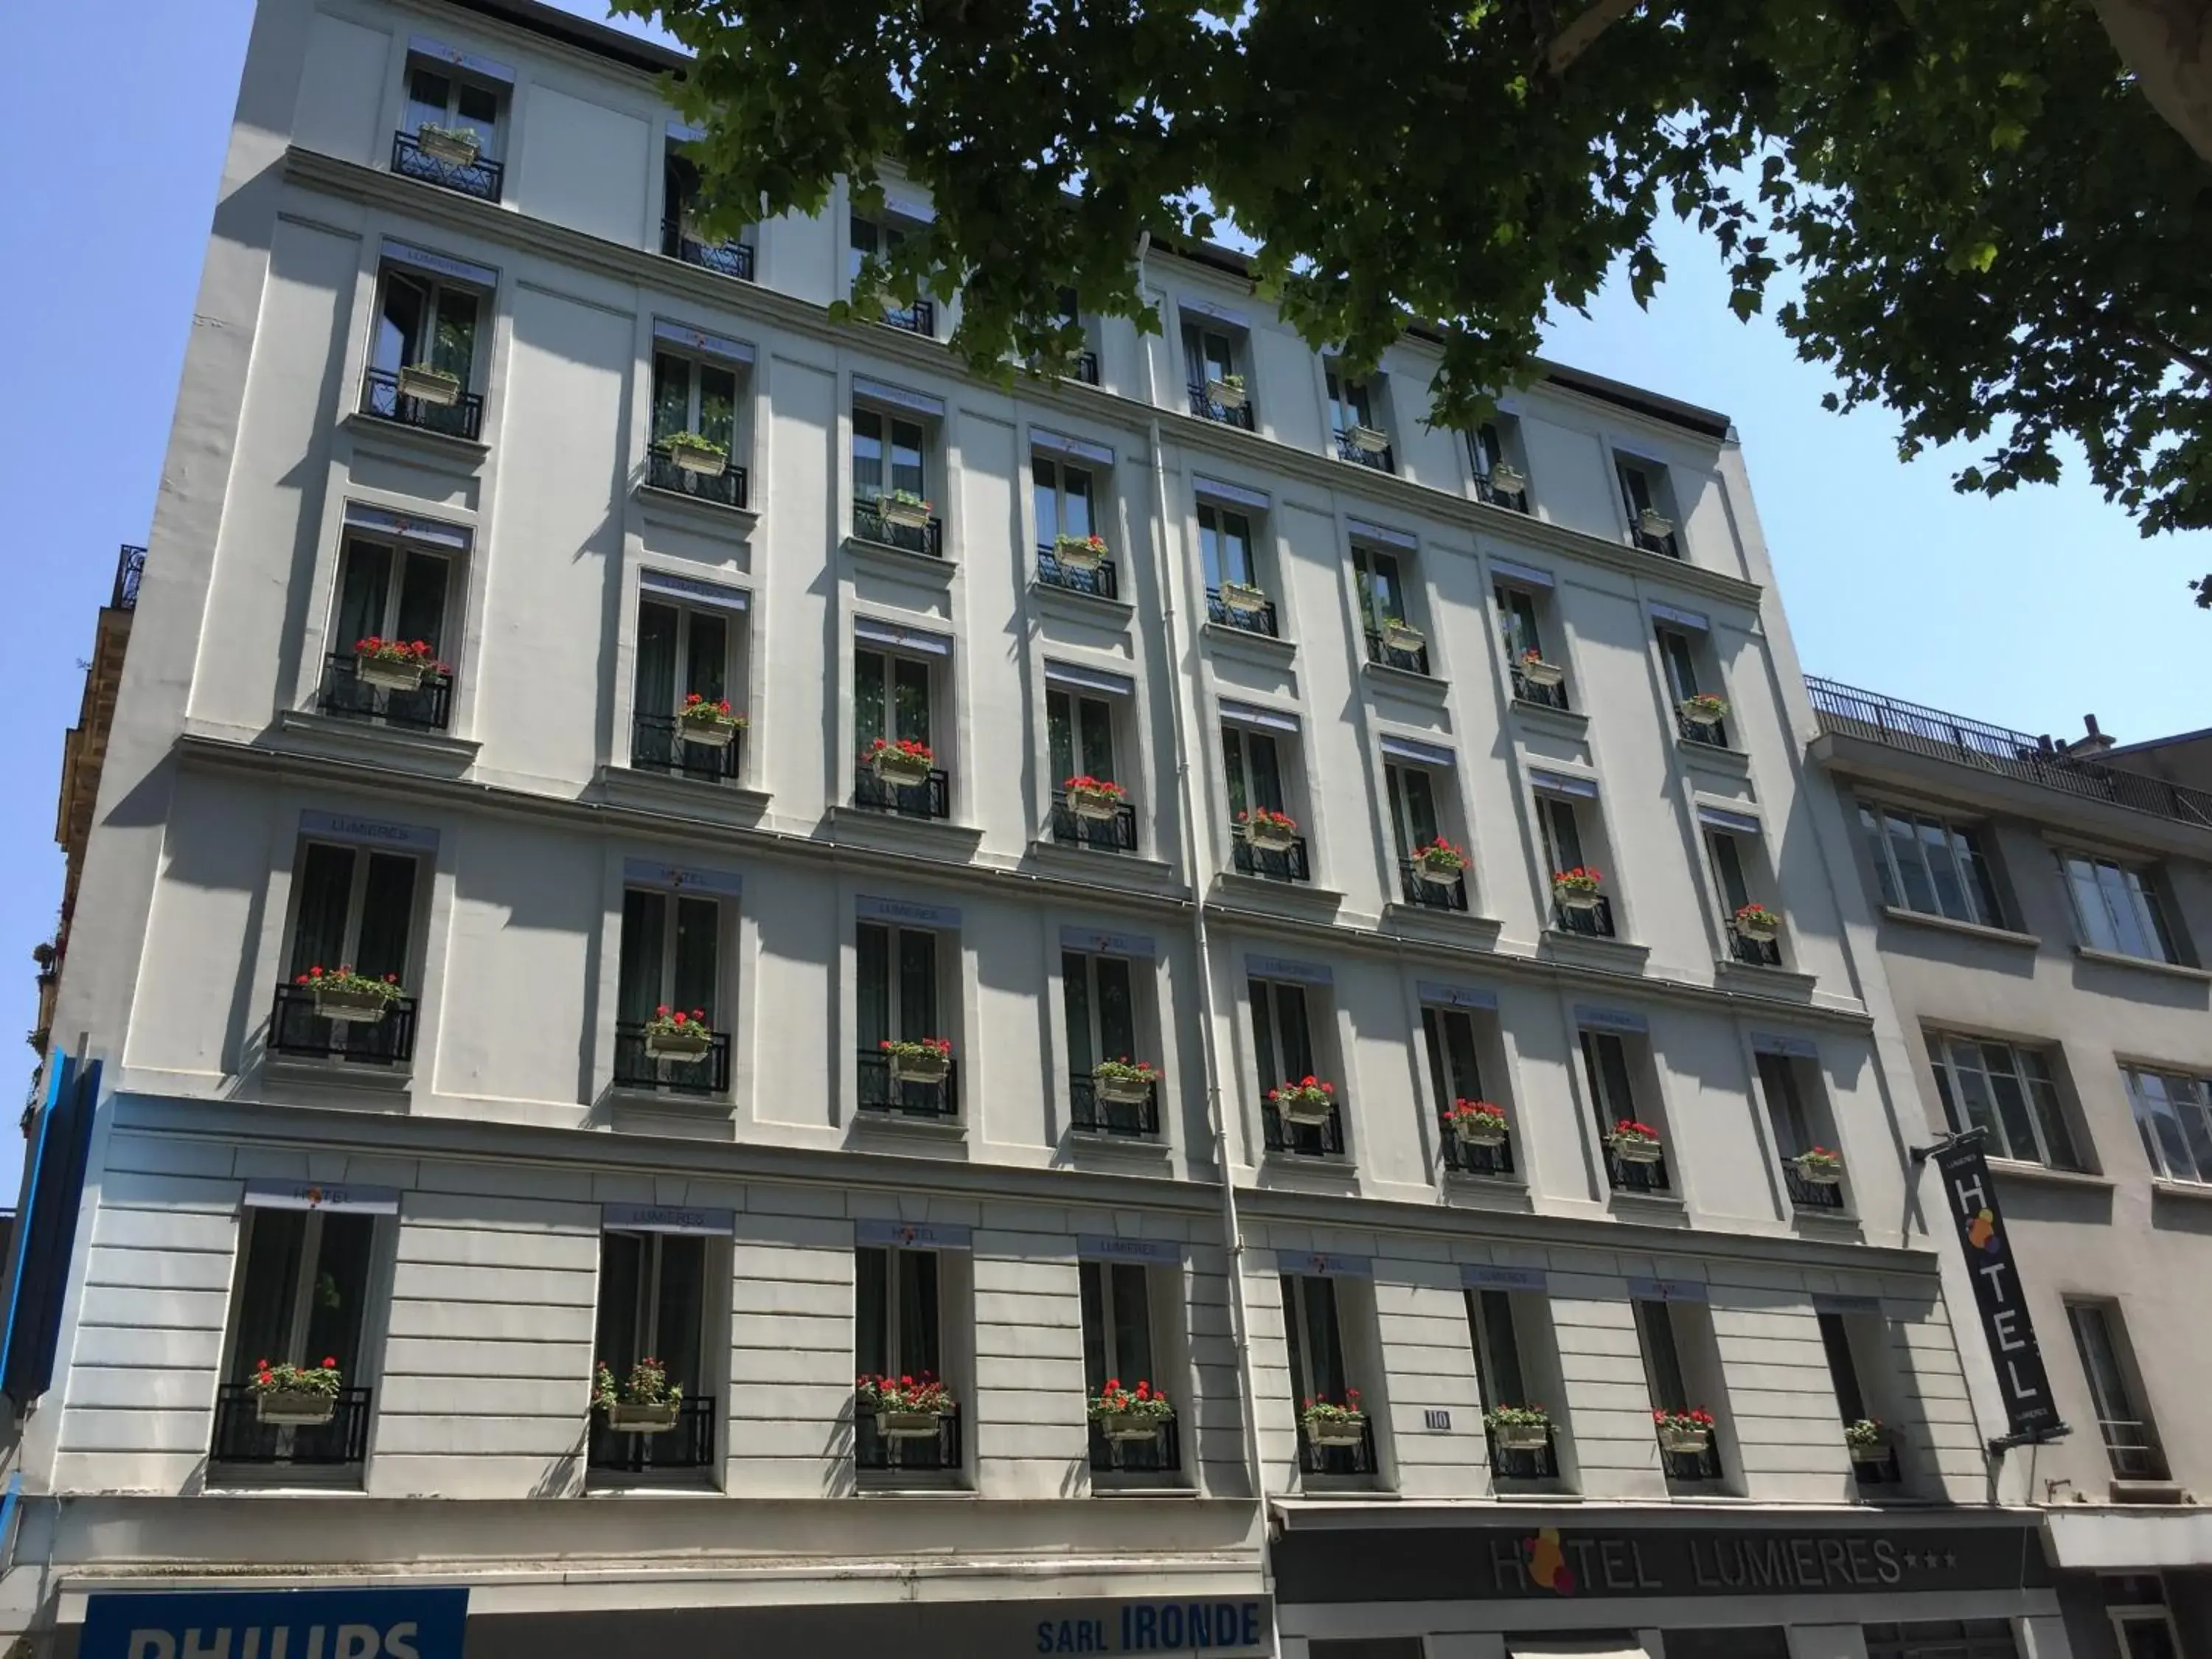 Facade/entrance, Property Building in Hôtel Lumières Montmartre Paris